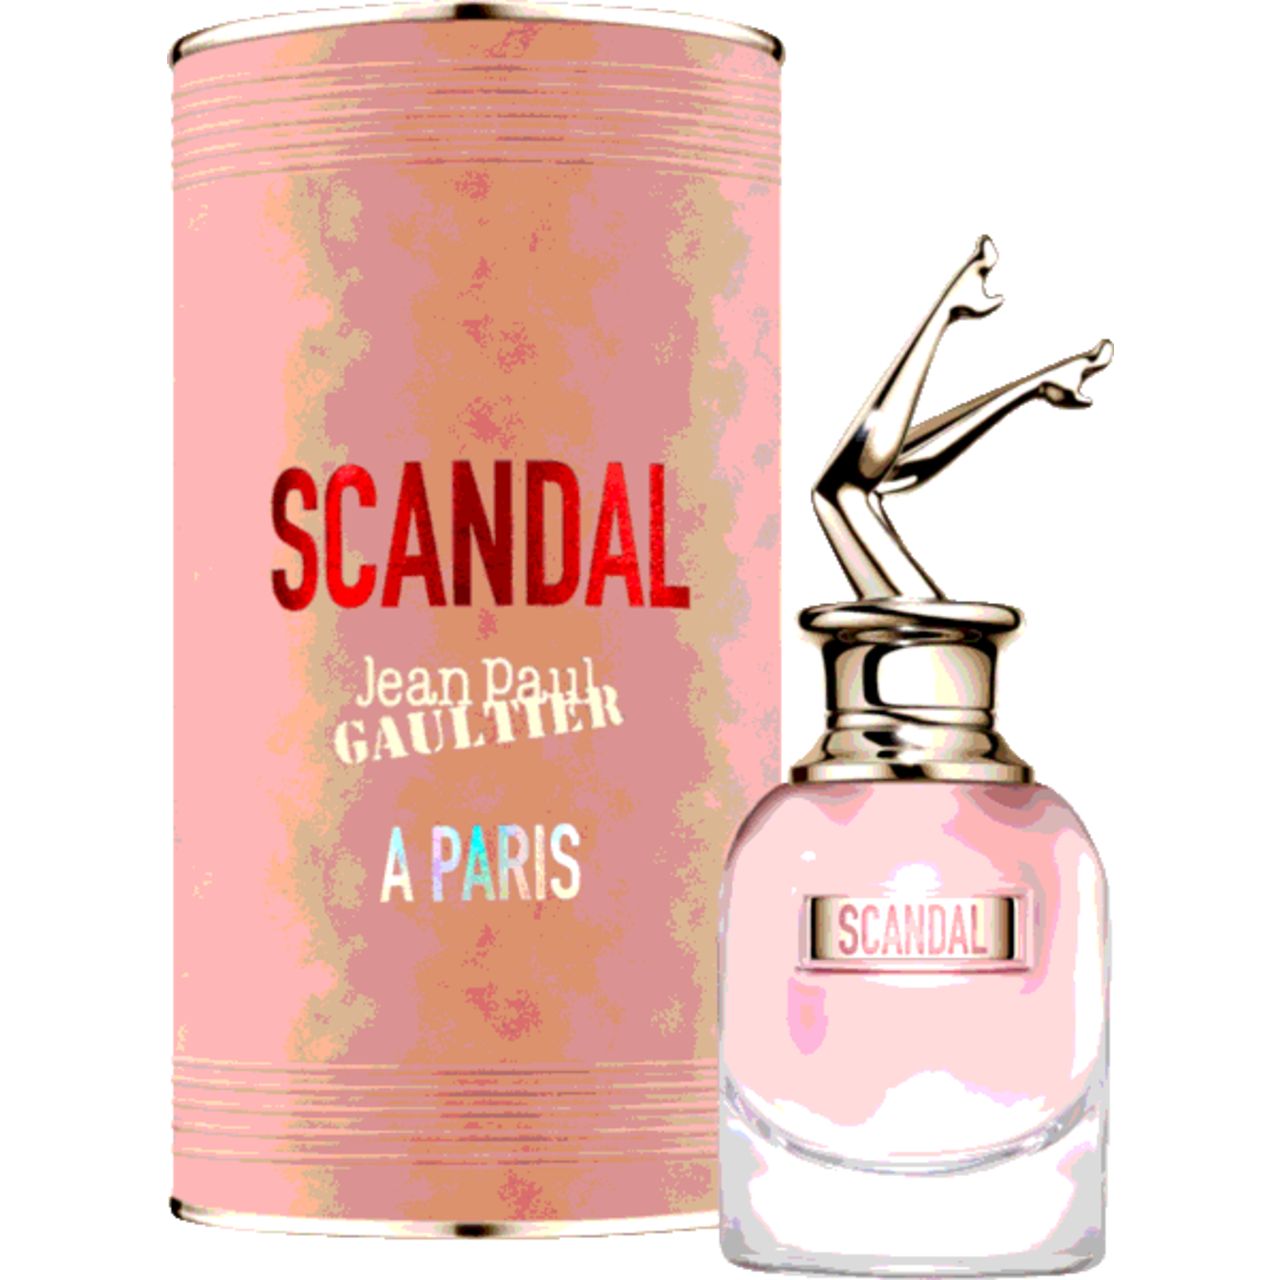 Jean Paul Gaultier, Scandal A Paris E.d.T. Nat. Spray